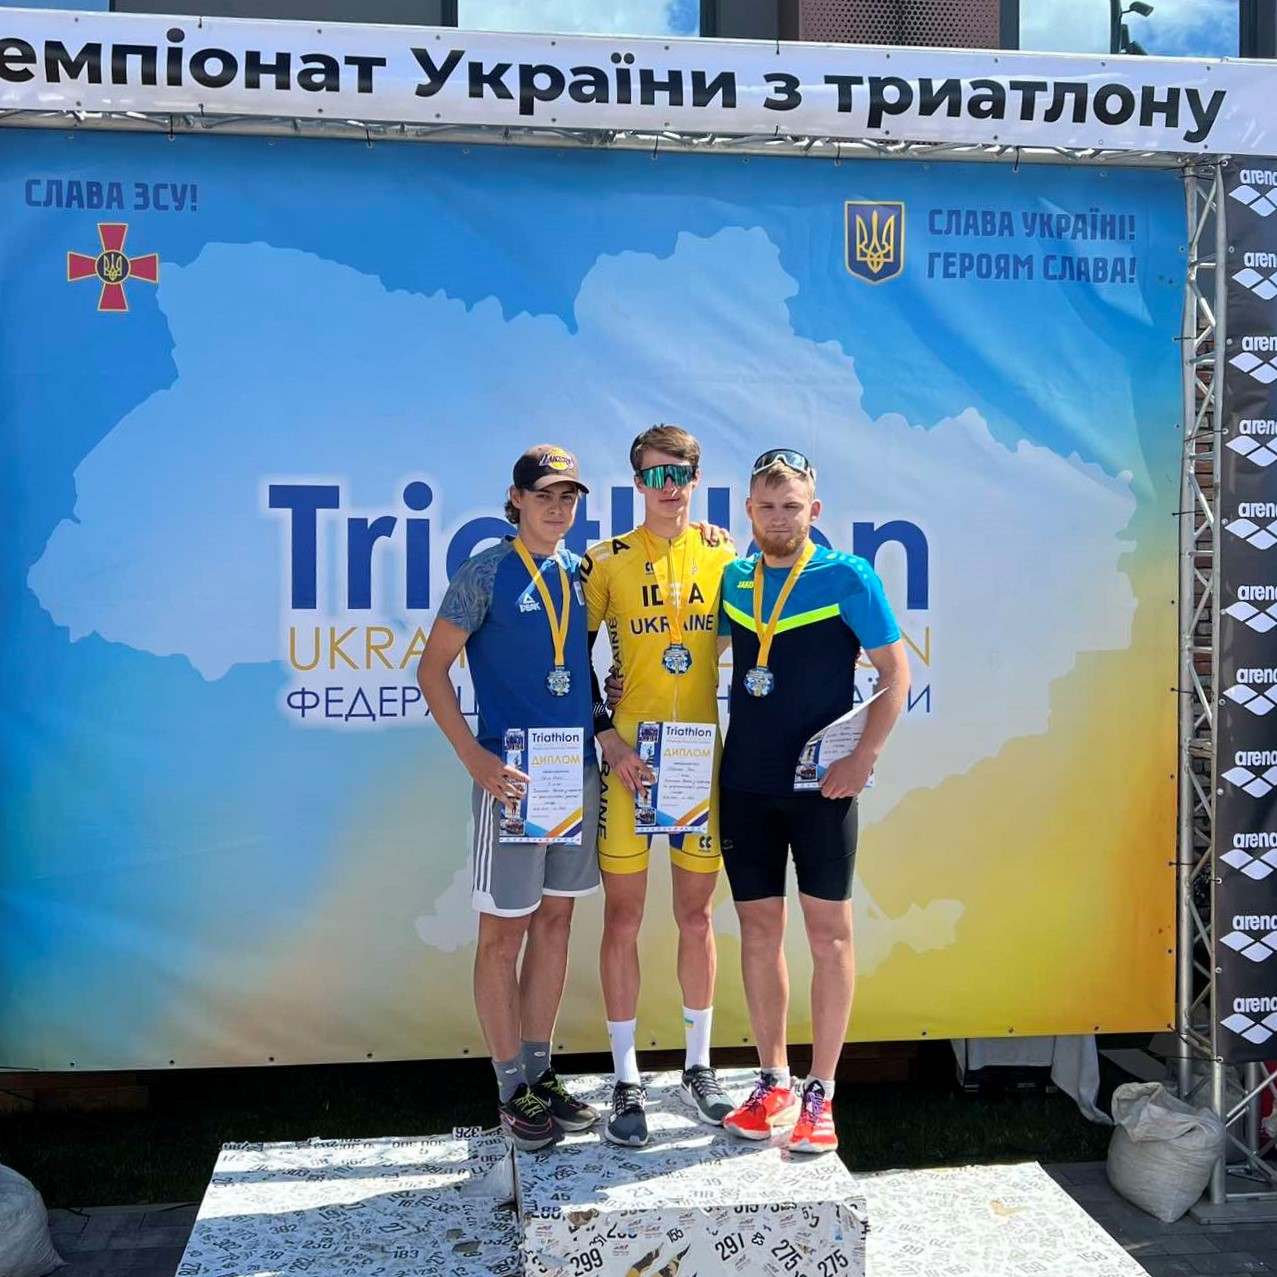 Спортсмен політехніки виборов бронзову нагороду Чемпіонату України з триатлону на суперспринтерській дистанції